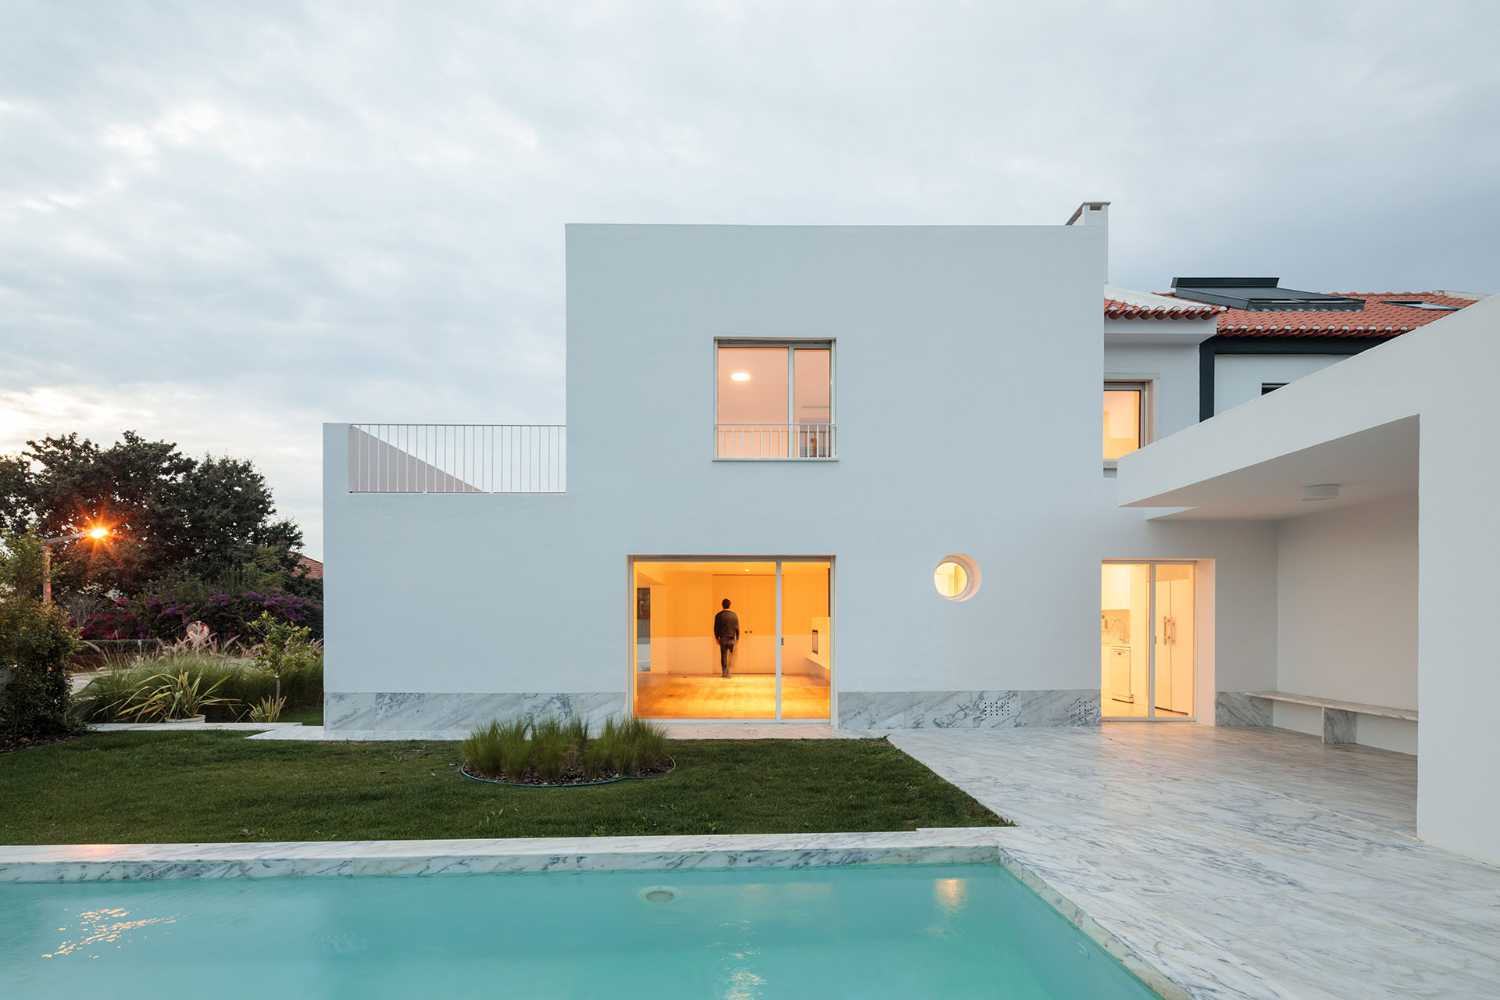 Recuperación de una casa en Lisboa. De una estética caótica a una arquitectura coherente y minimalista